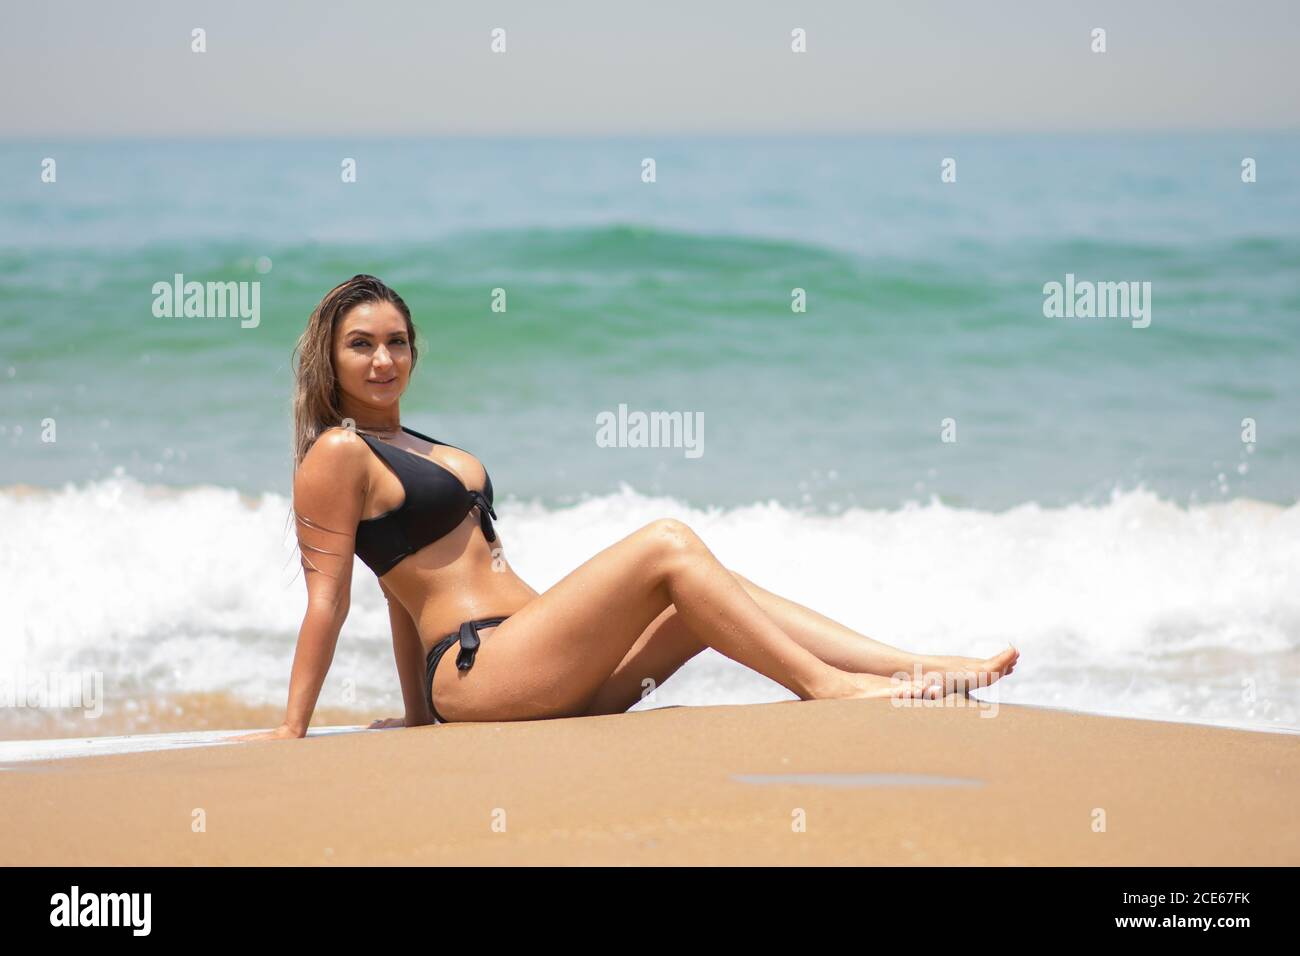 Woman in bikini relaxing on the beach Stock Photo